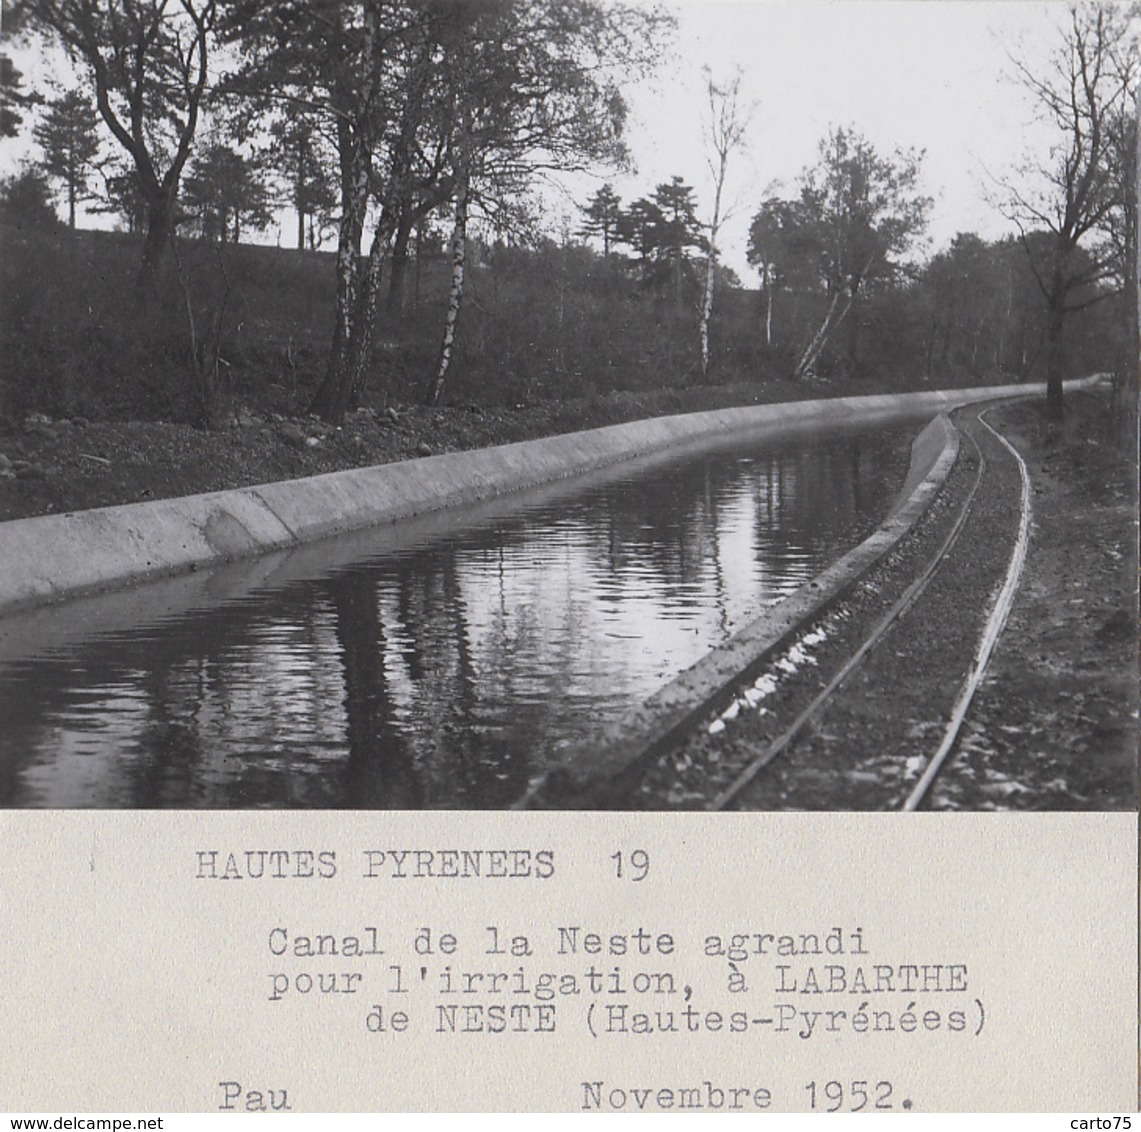 La Barthe De Neste 65 - Agriculture Irrigation - Canal De La Neste - 1952 - Photographie - La Barthe De Neste